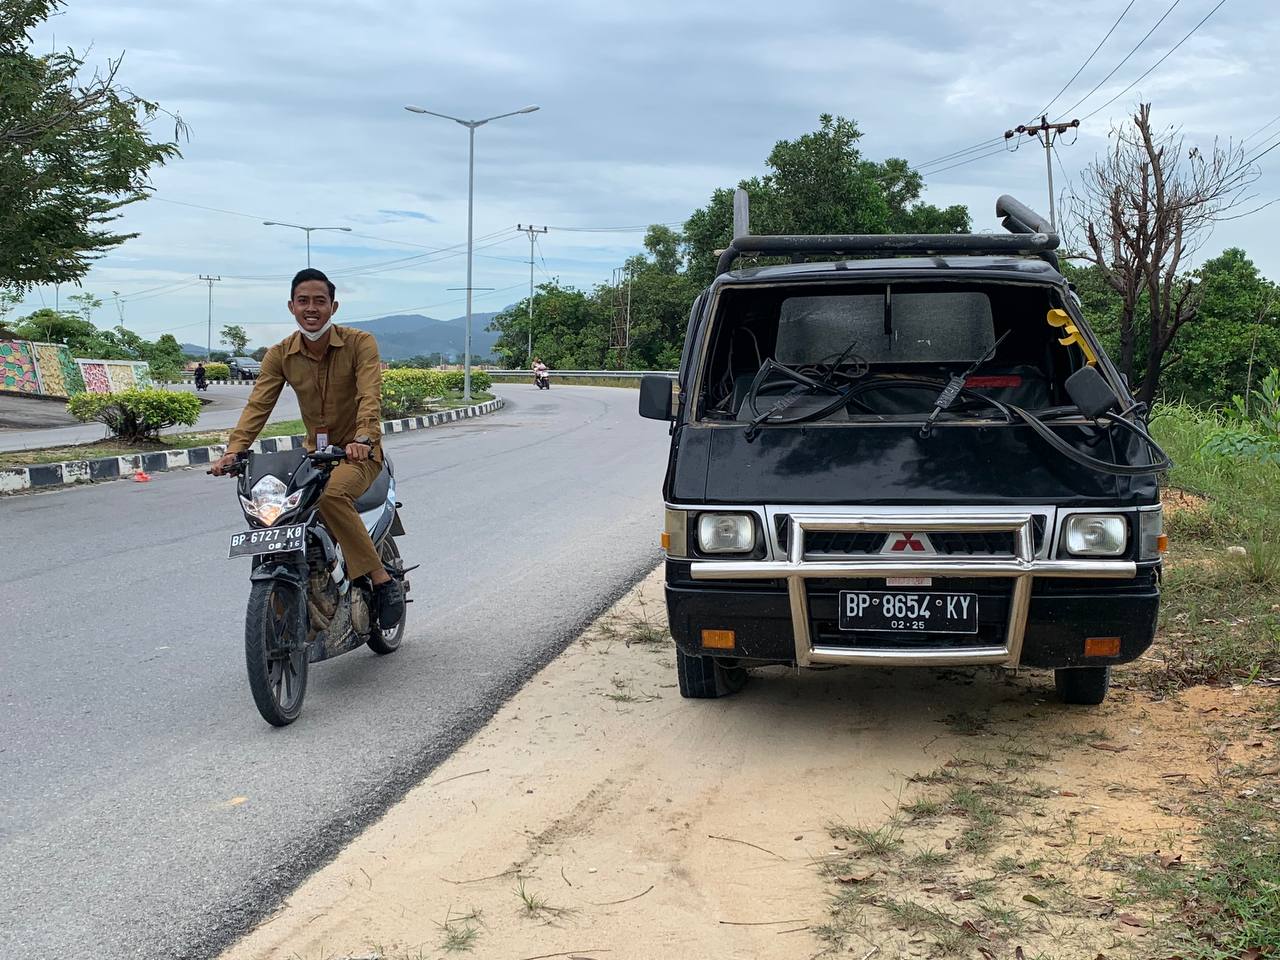 Mobil Pickup Hantam Pembatas Jalan di Karimun, Pecah Ban Jadi Pemicu